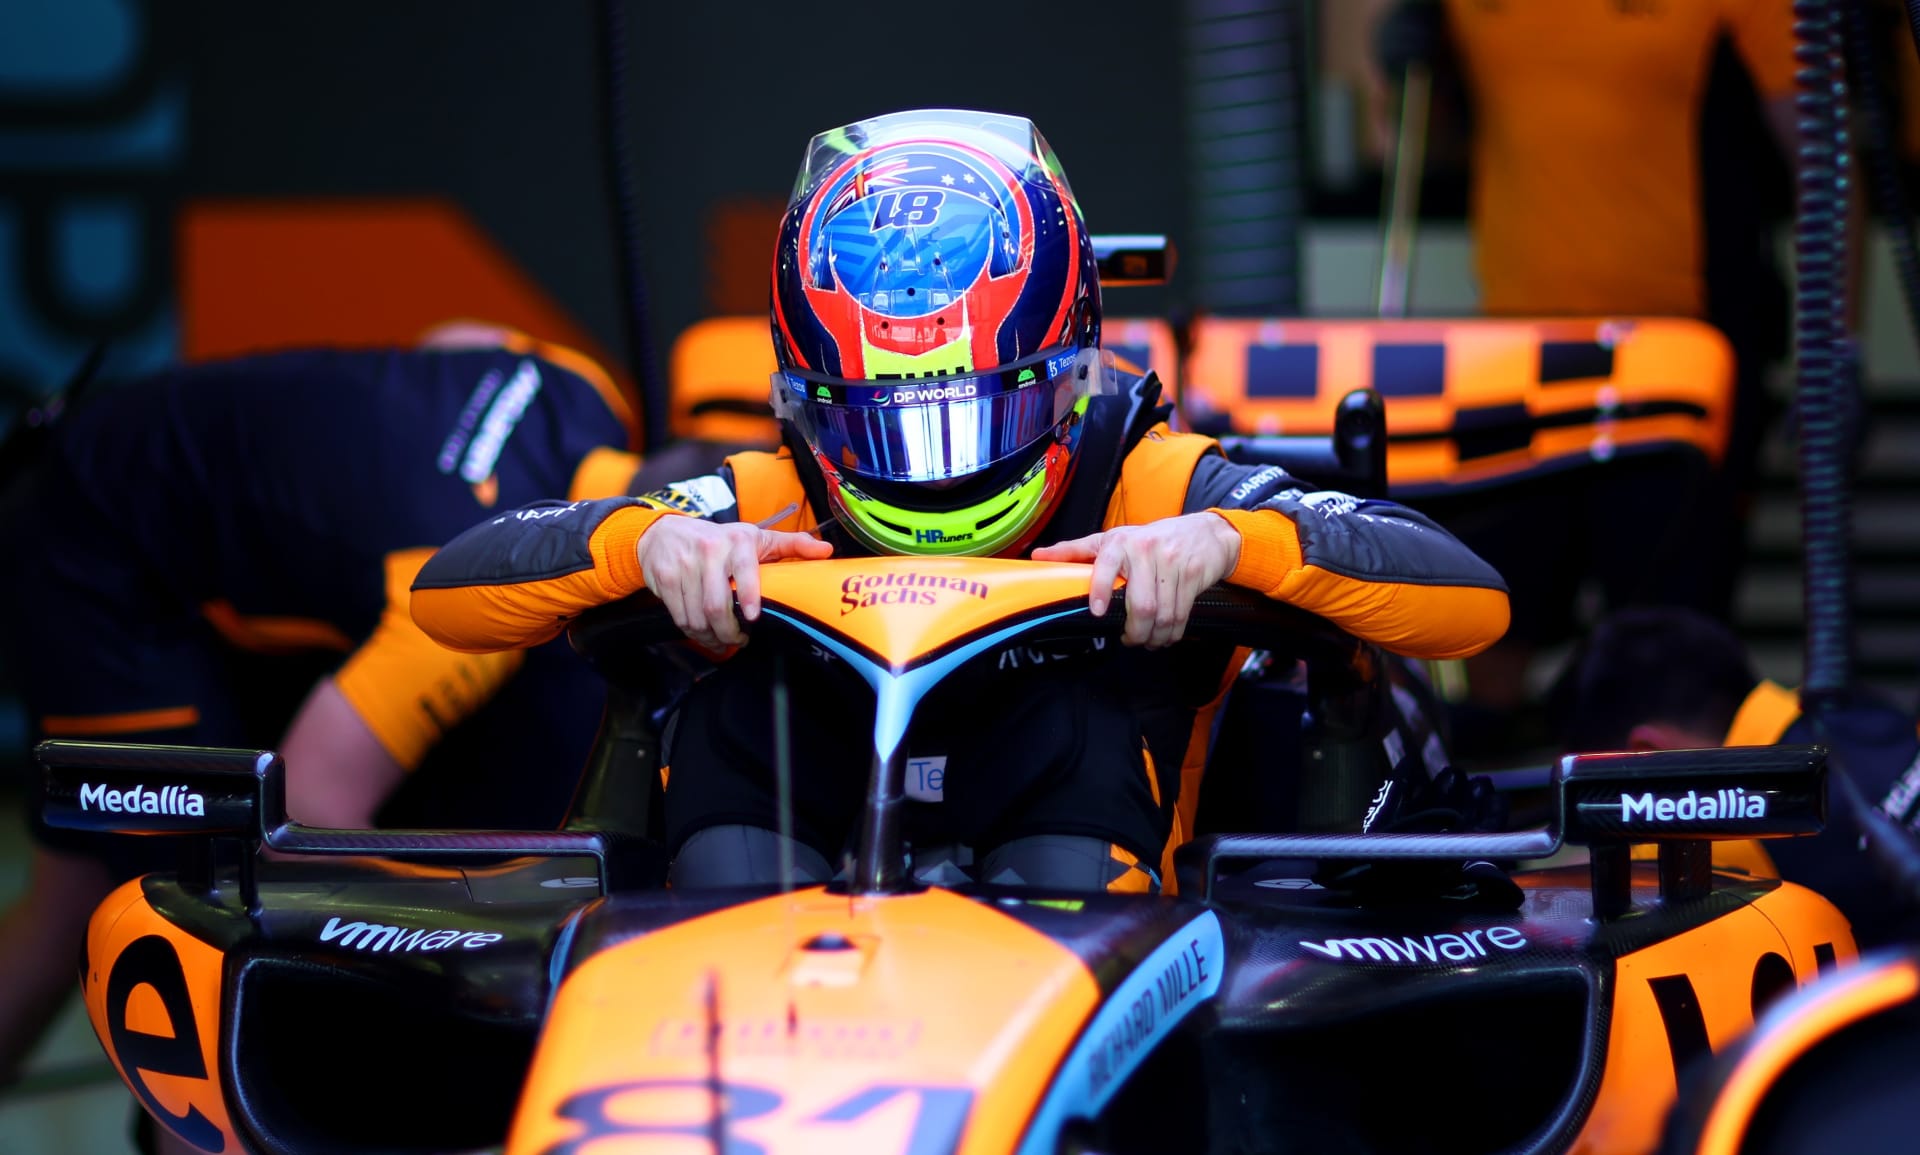 Nováček Oscar Piastri se souká z vozu McLaren během testů v Bahrajnu.